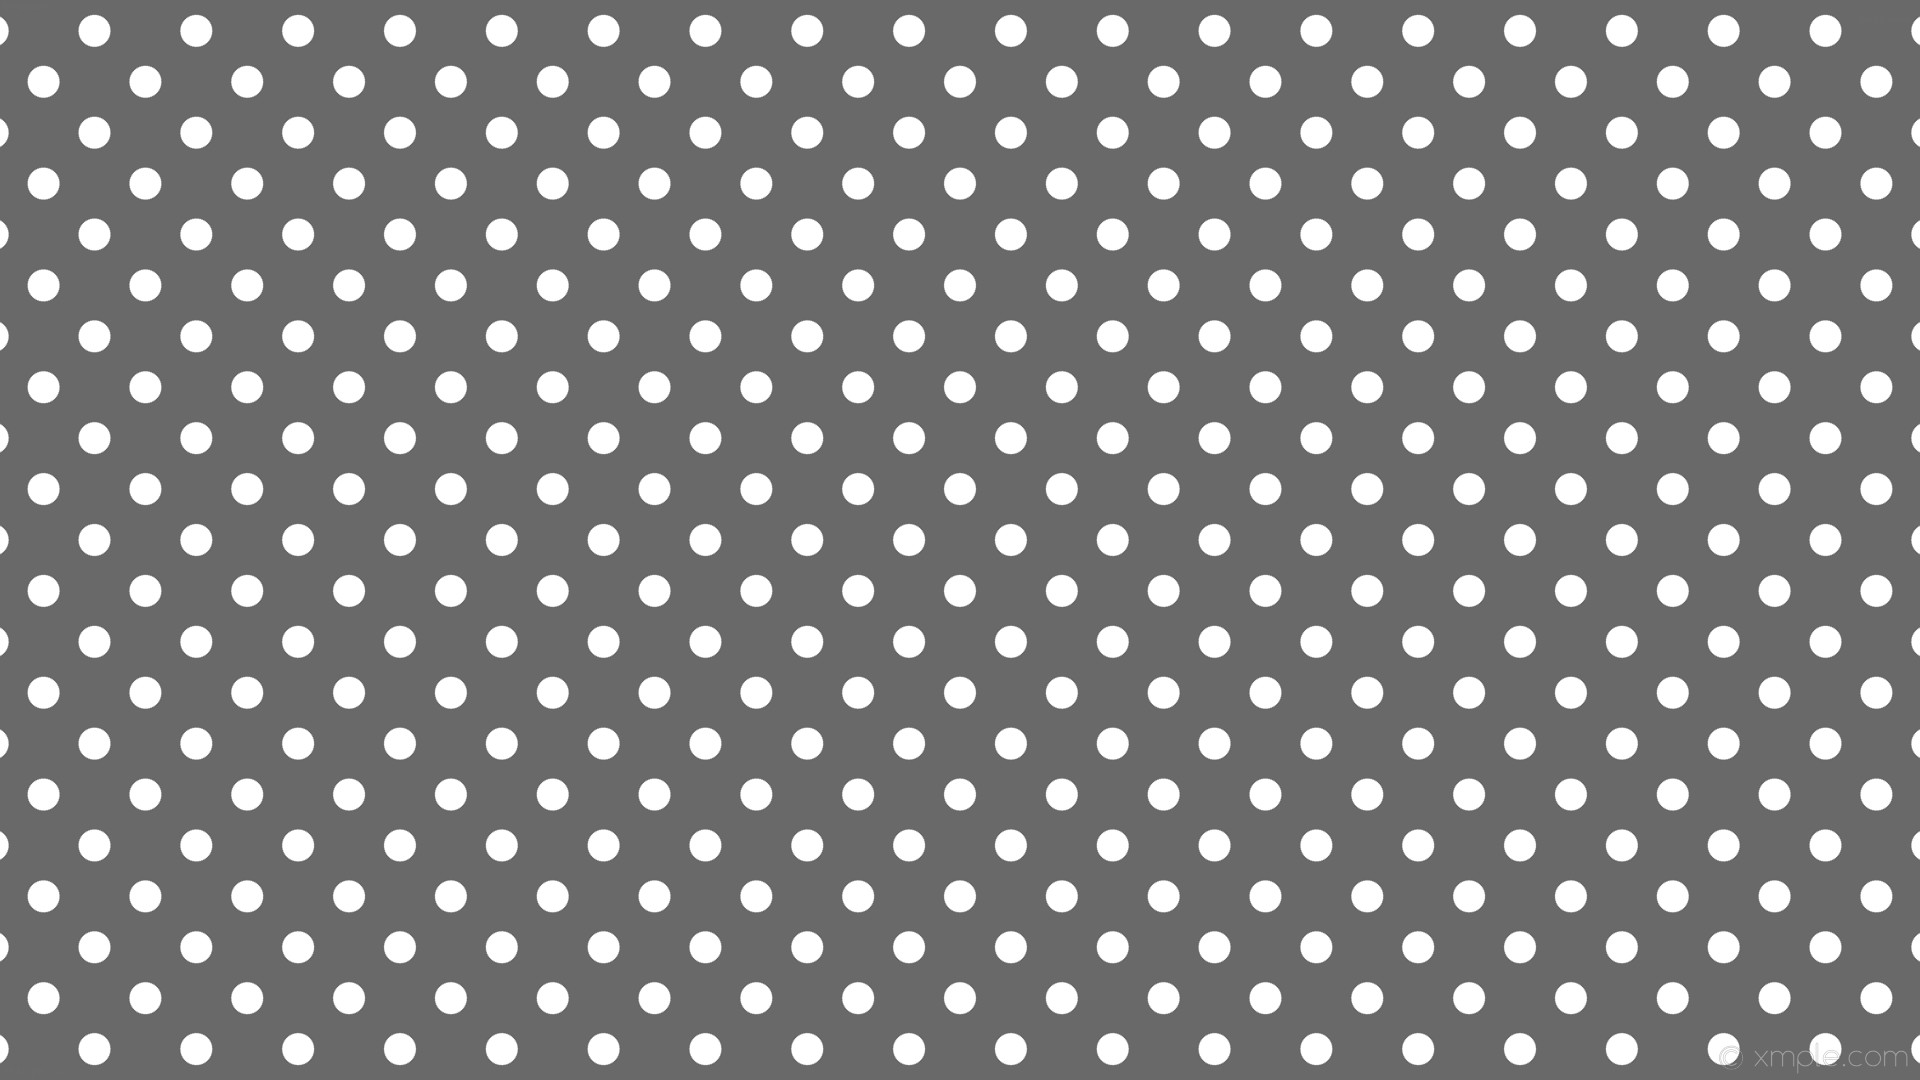 1920x1080 wallpaper polka dots grey spots white dim gray #696969 #ffffff 315Â° 32px  72px